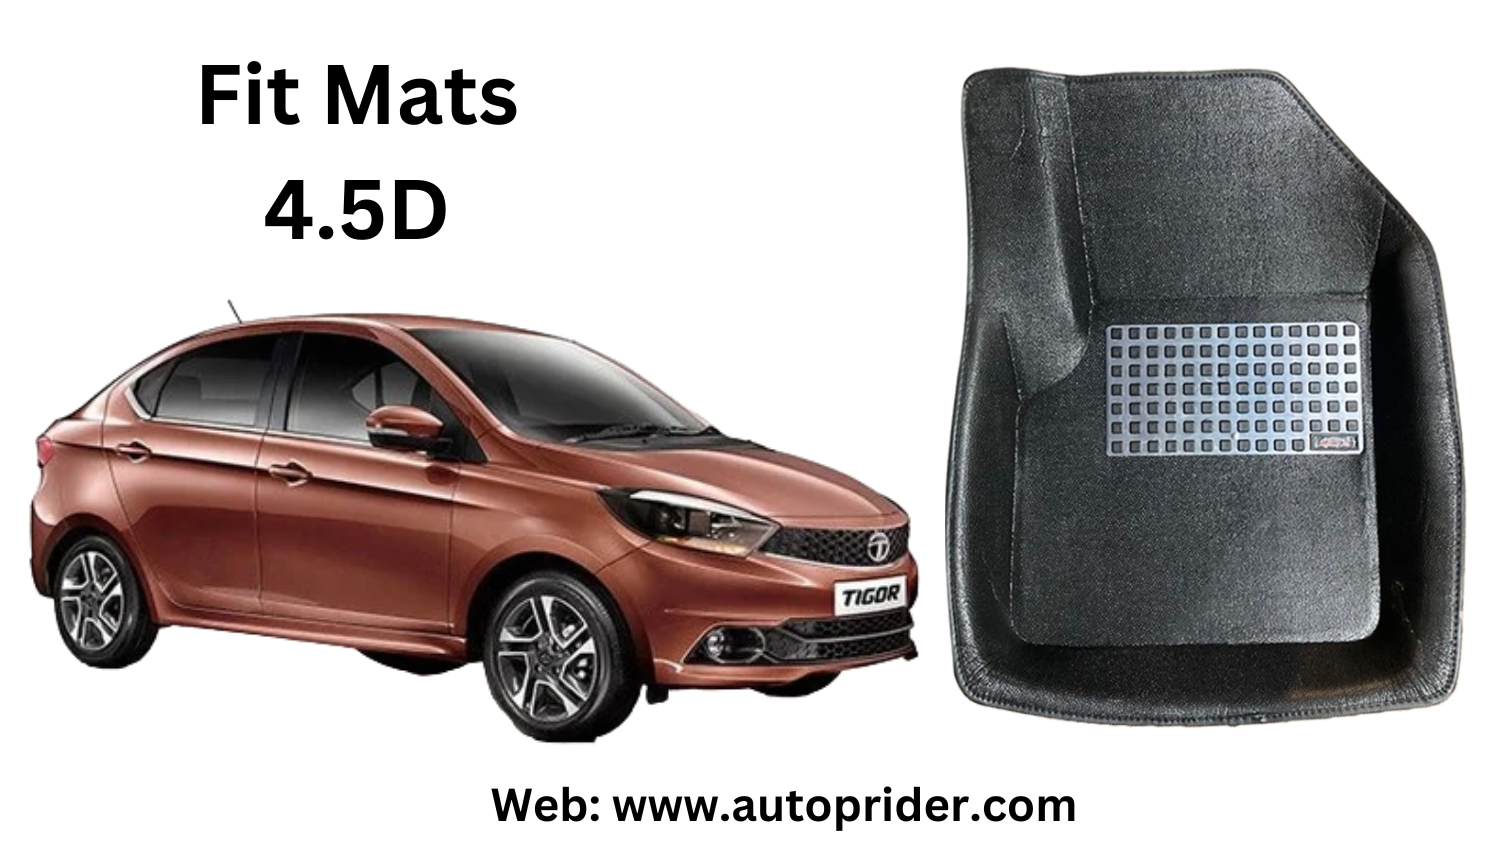 Autoprider | Fit Mats 4.5D Economy Car Mats for Tata Tigor